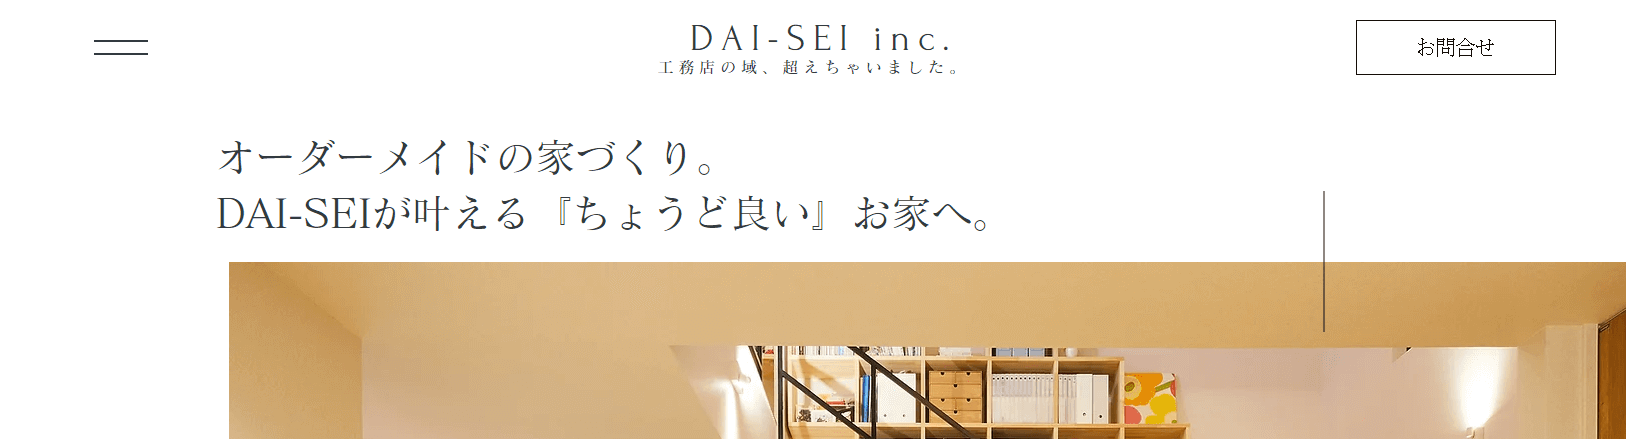 株式会社DAI-SEIのメイン画像